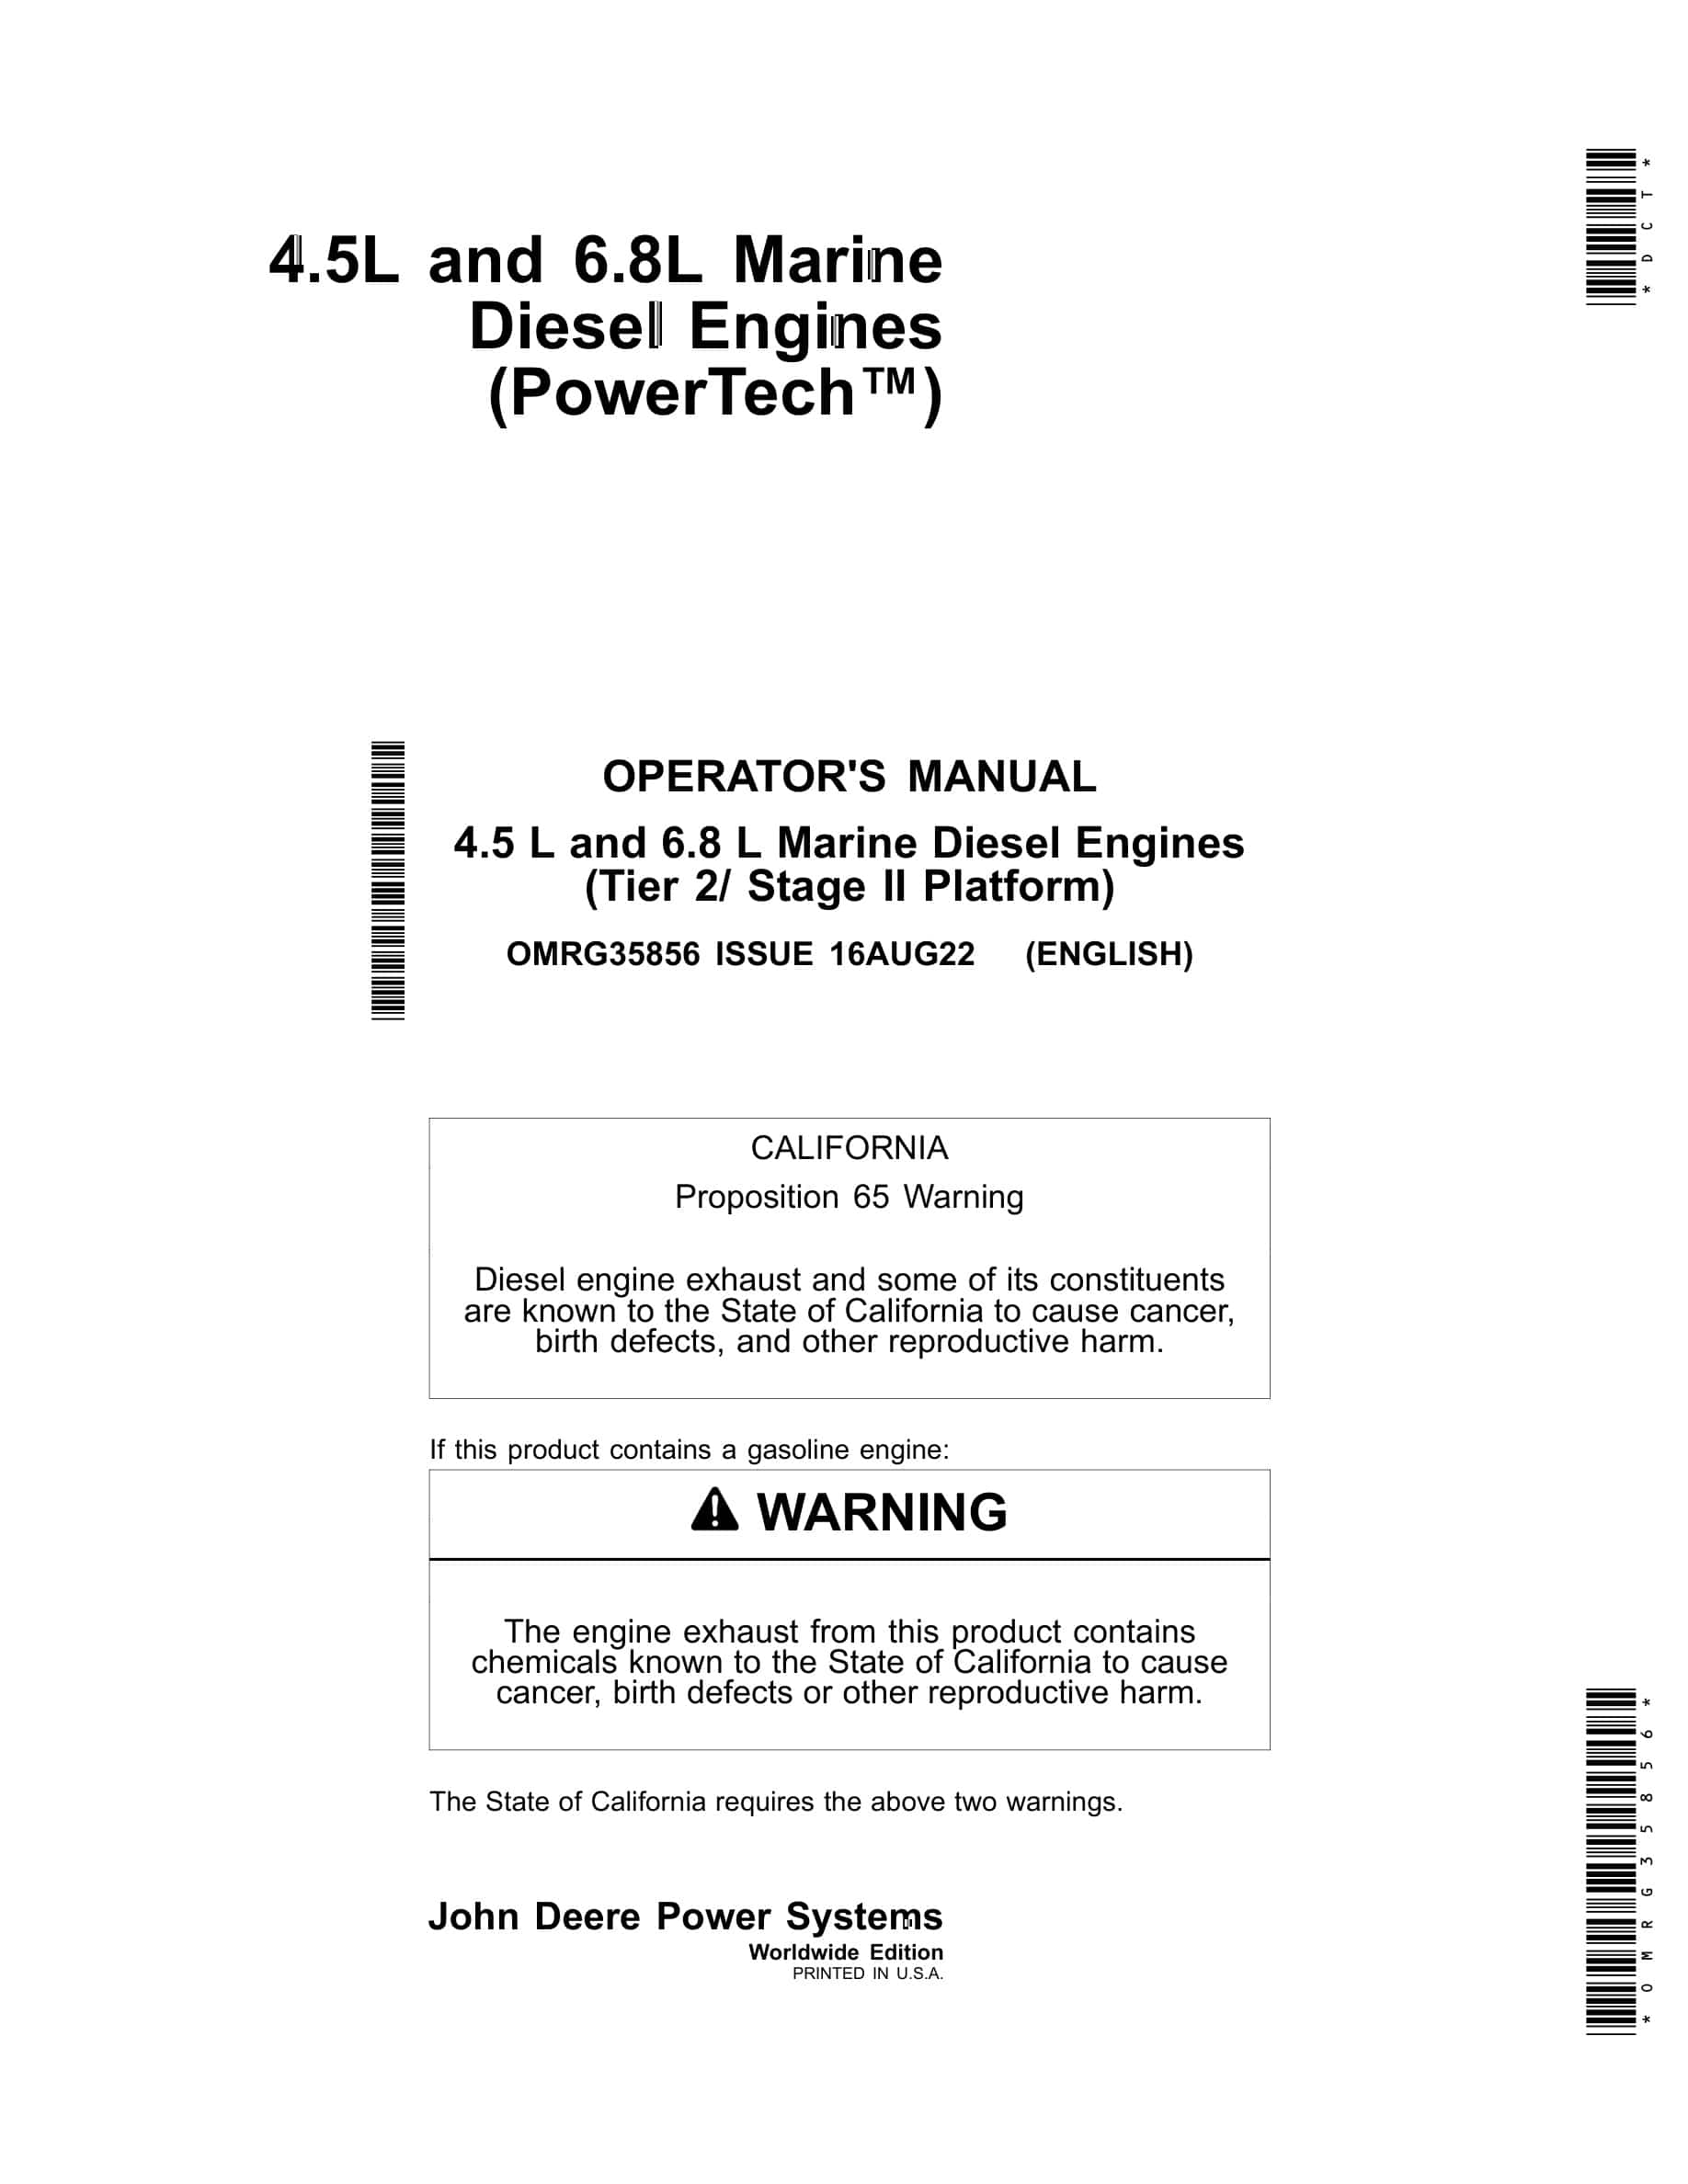 John Deere PowerTech 4.5 L and 6.8 L (Tier 2 Stage II Platform) Marine Diesel Engines Operator Manual OMRG35856-1